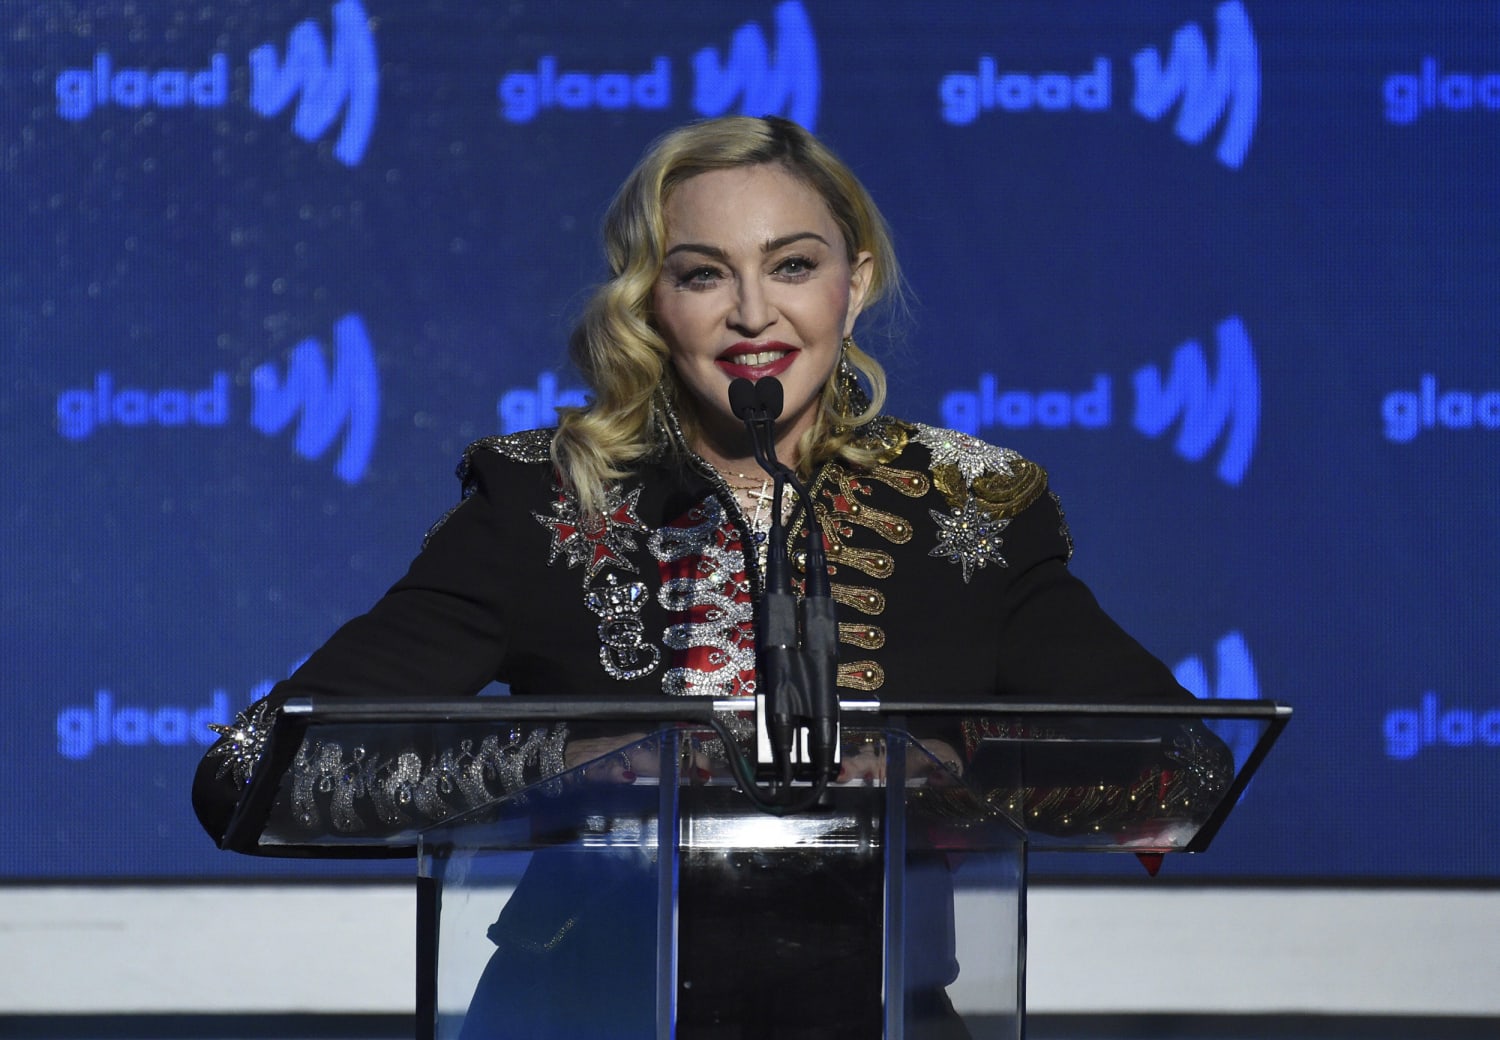 L'étrange vidéo de Madonna parlant du coronavirus dans un bain de